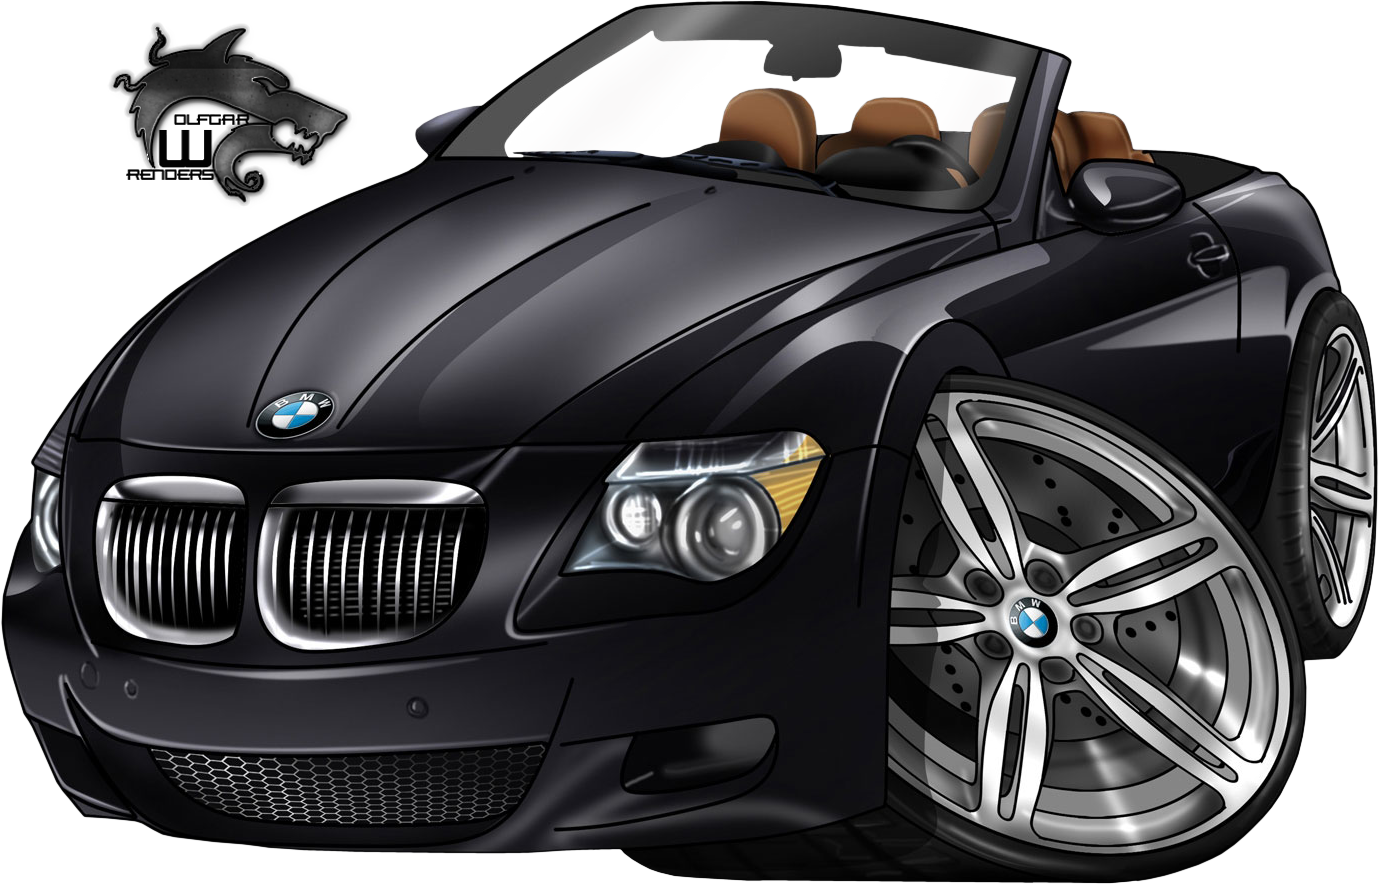 Vehicle Renders - BMW-Cartoon-Car - Signature Labs Render Gallery